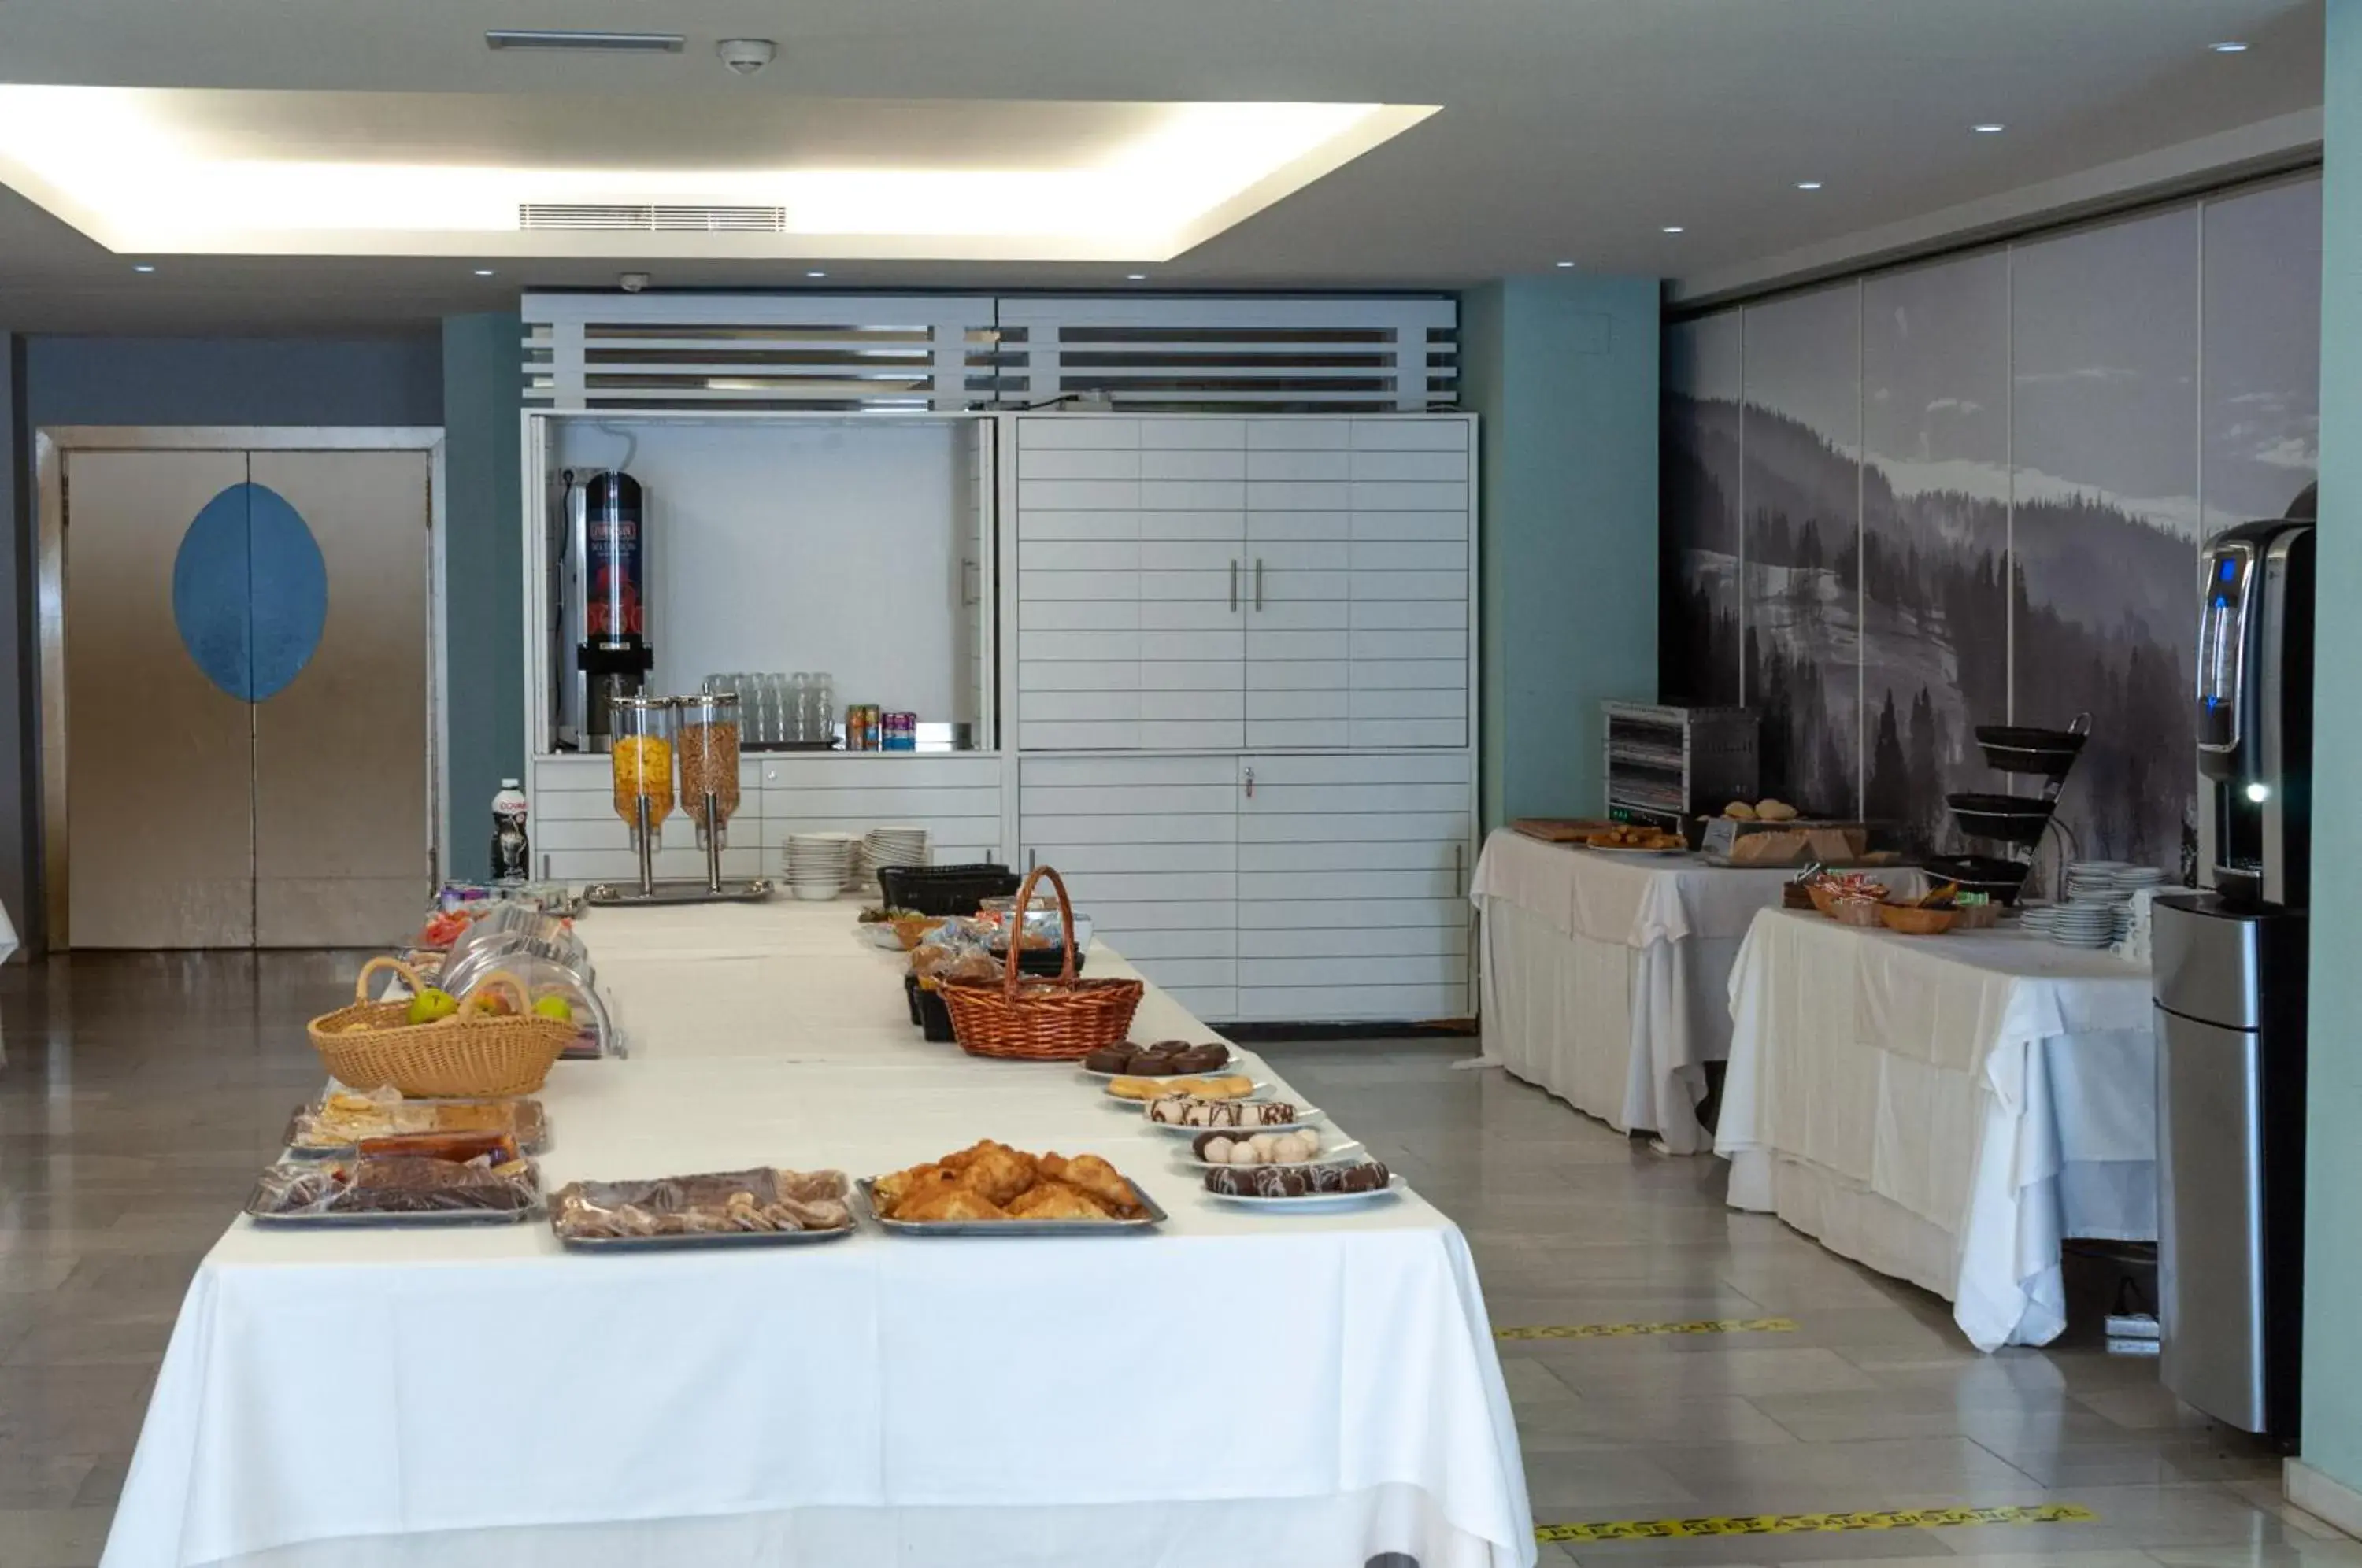 Buffet breakfast in Hotel Oasis